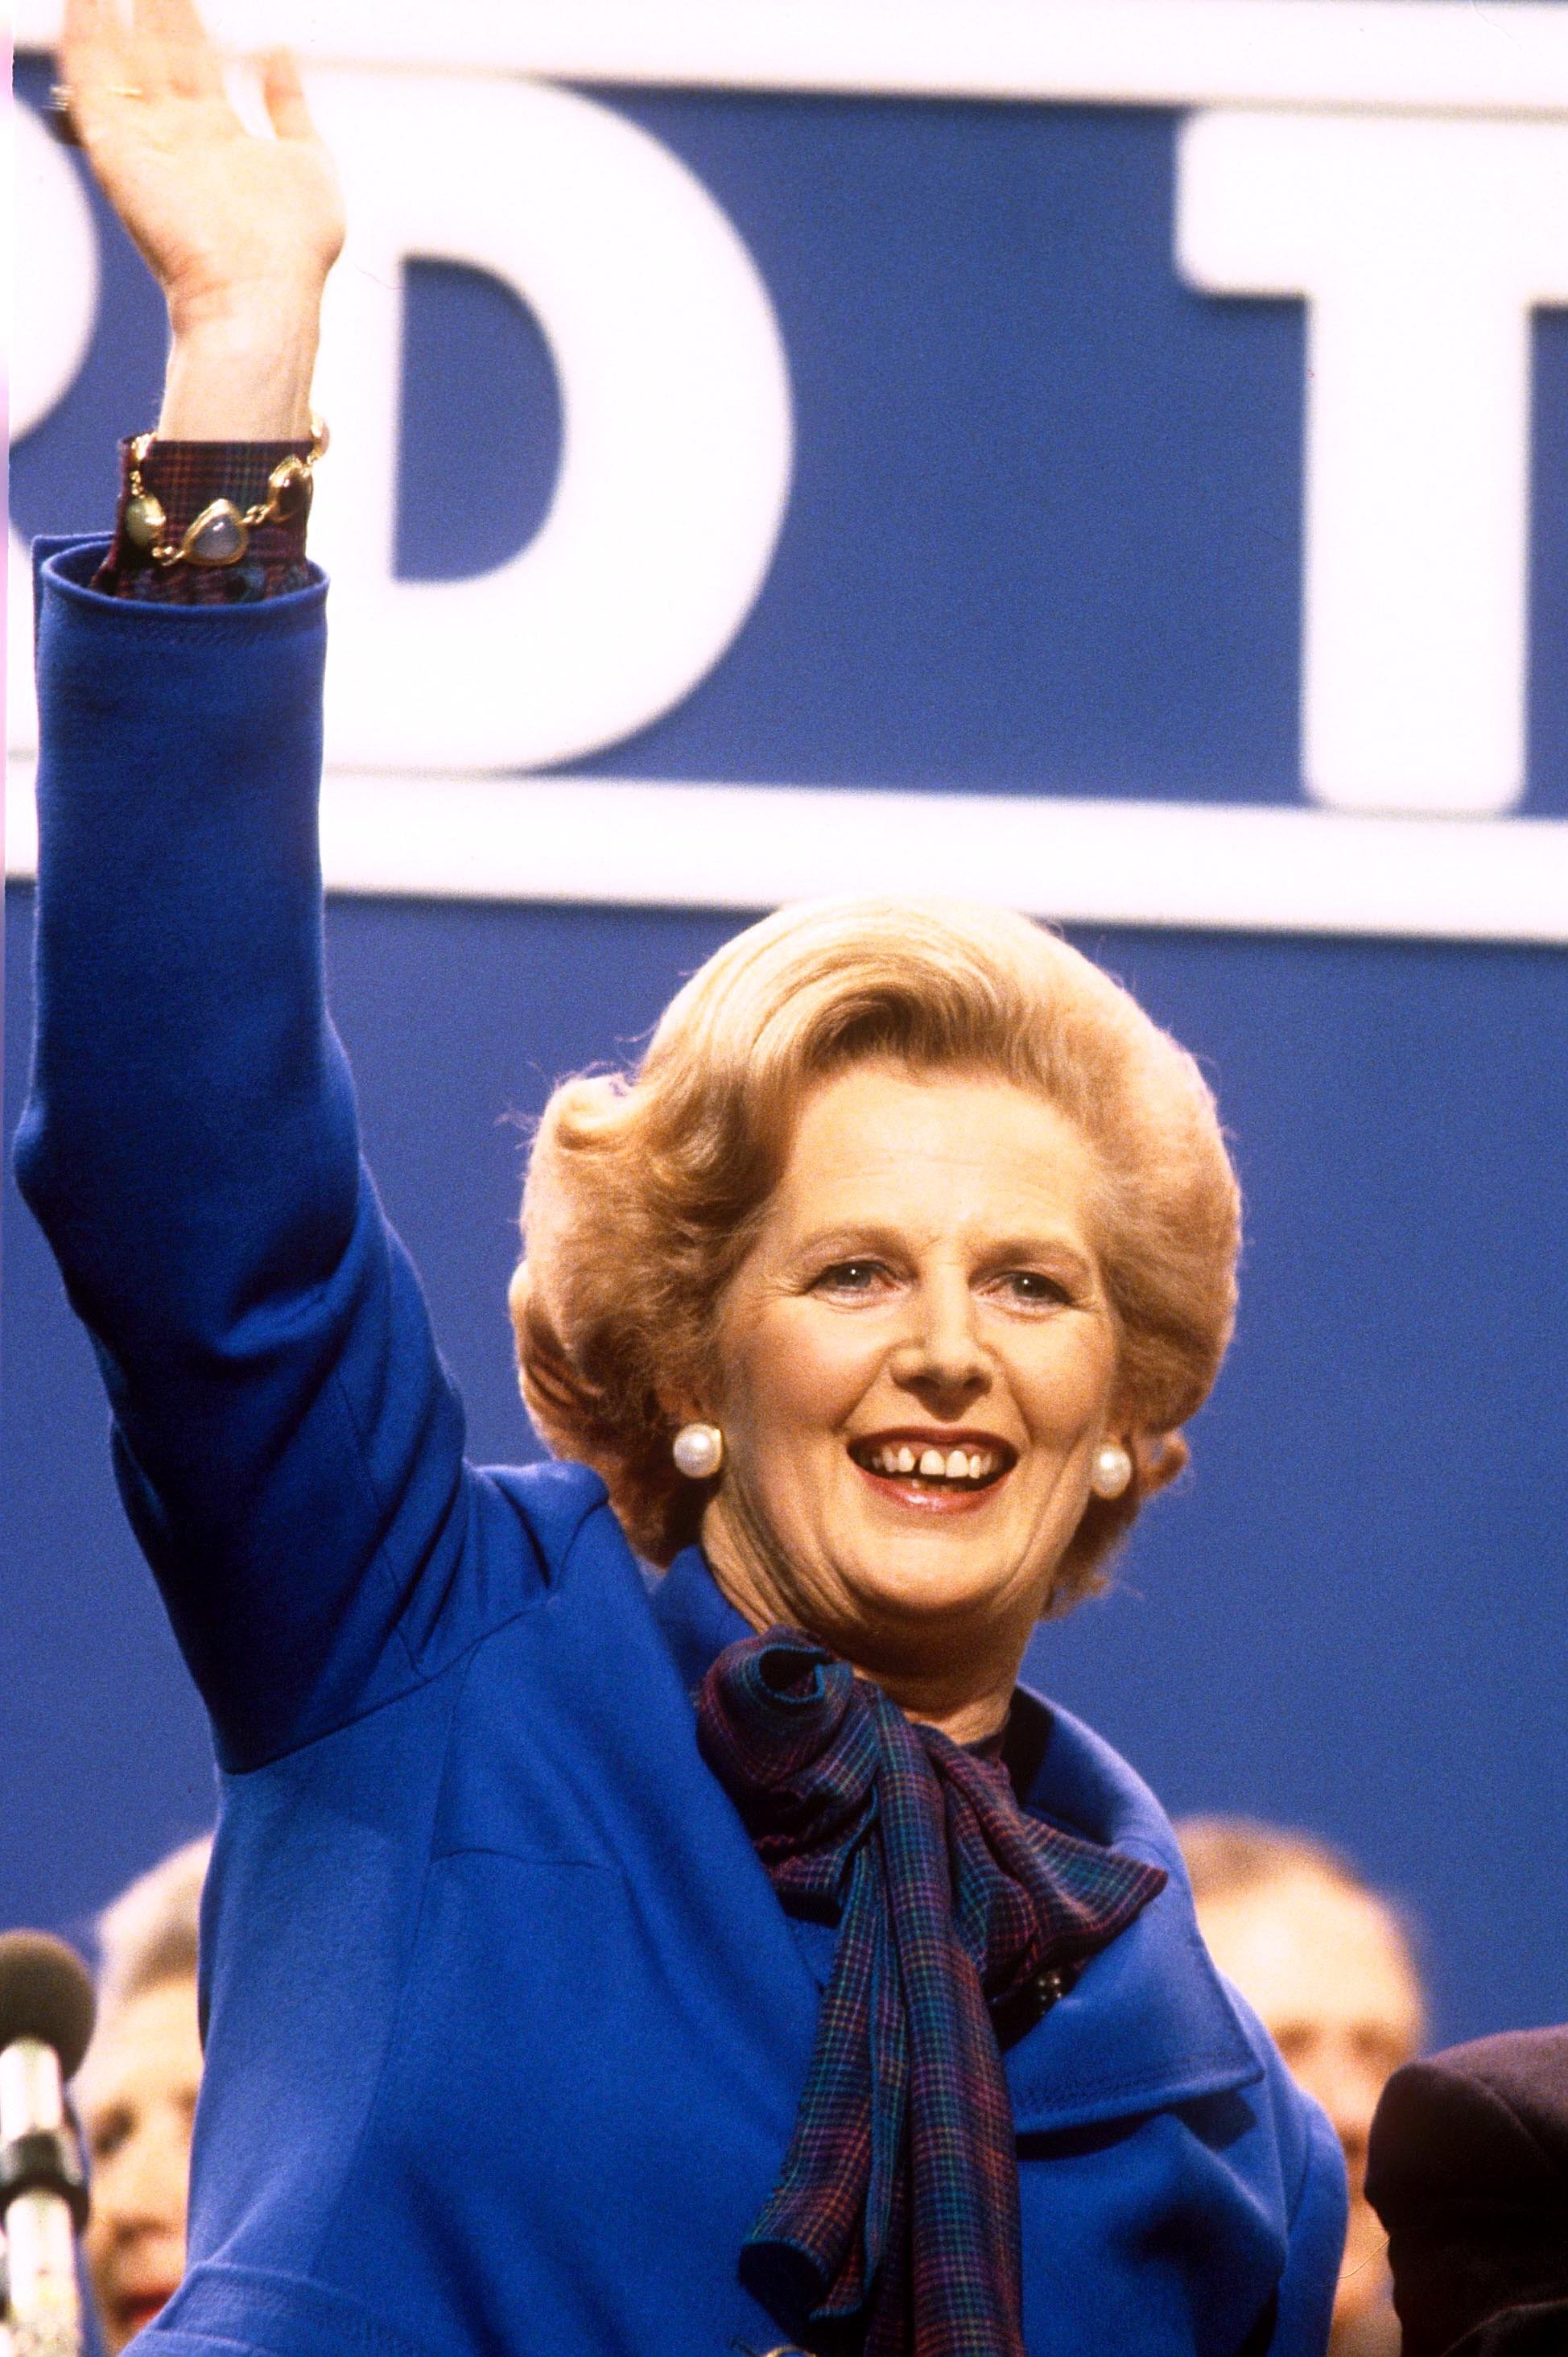 Berichten zufolge denken die Rebellen auch über Penny Mordaunt nach und blicken auf die Aussage der verstorbenen Lady Thatcher: „Wenn Sie wollen, dass etwas erledigt wird, fragen Sie eine Frau.“